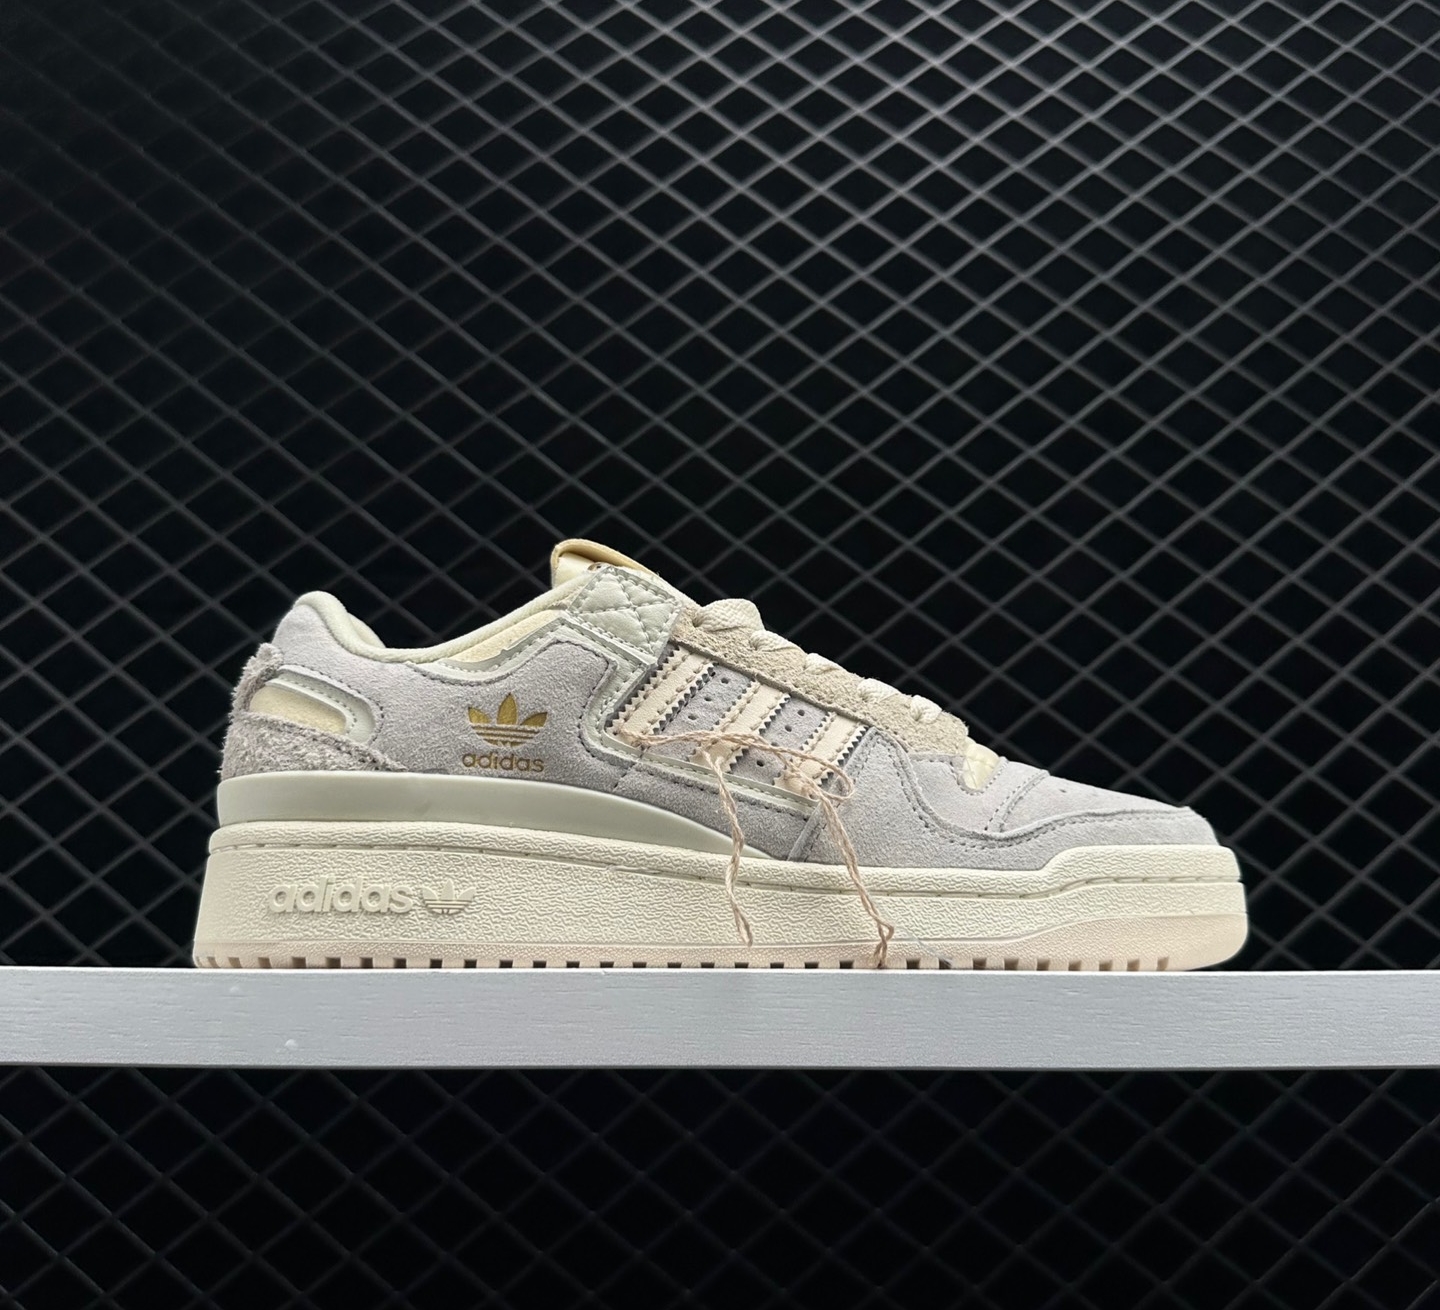 Adidas Forum 84 Low 'Off White' GW0299 - Premium Retro Sneakers